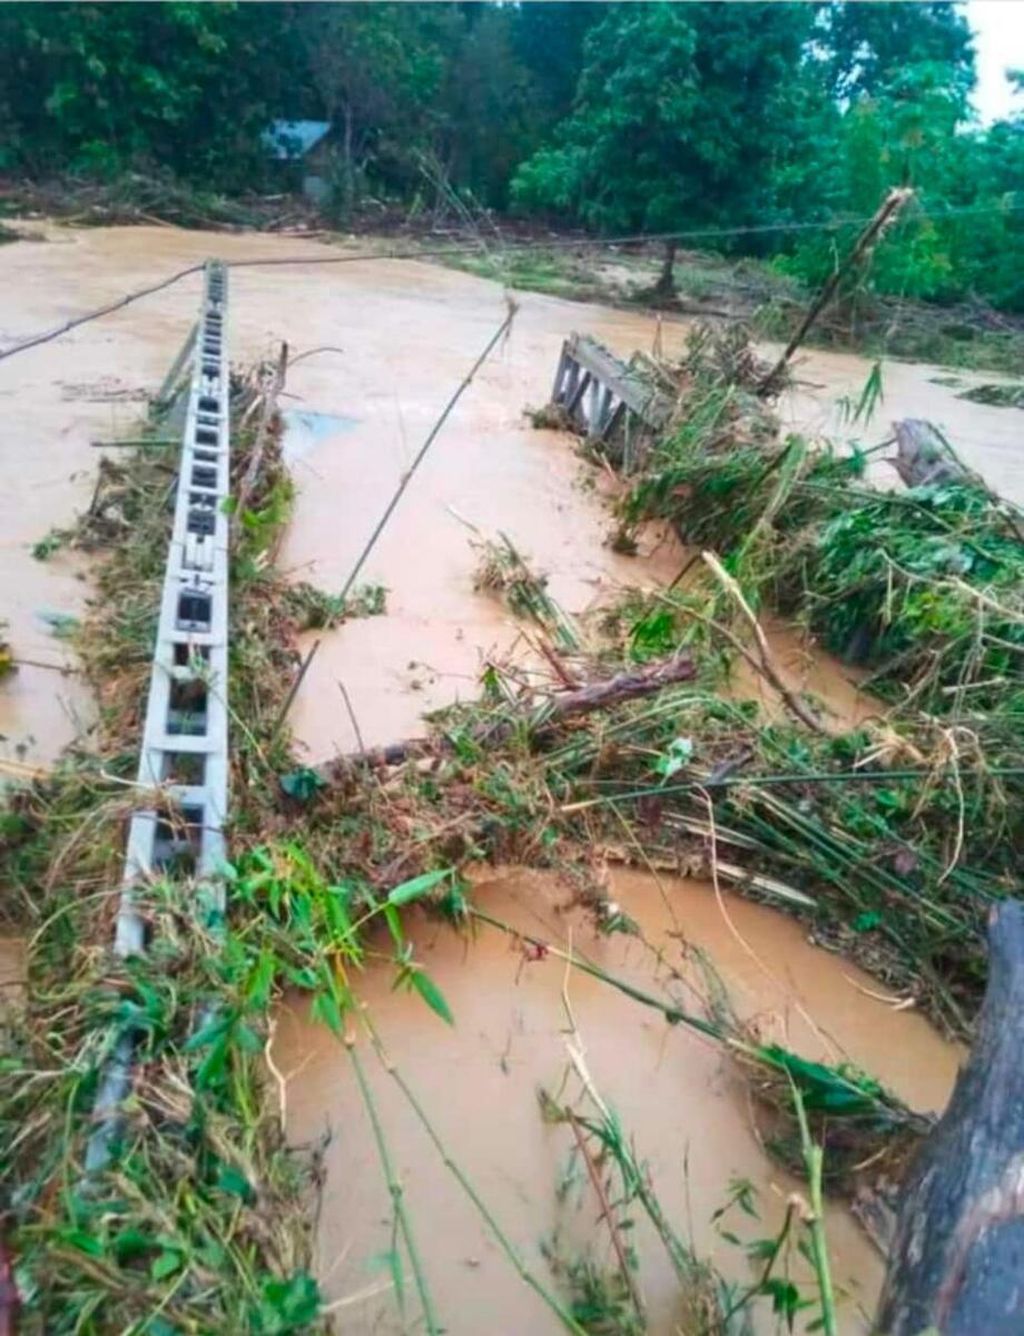 Sebuah jembatan yang menjadi akses utama masyarakat, menghubungkan empat kecamatan di Pulau Wawonii, Konawe Kepulauan, Sulawesi Tenggara, roboh diterjang banjir bandang, Senin (24/2/2020). Sedikitnya ratusan rumah terendam di lima desa akibat banjir yang membawa material kayu ini.